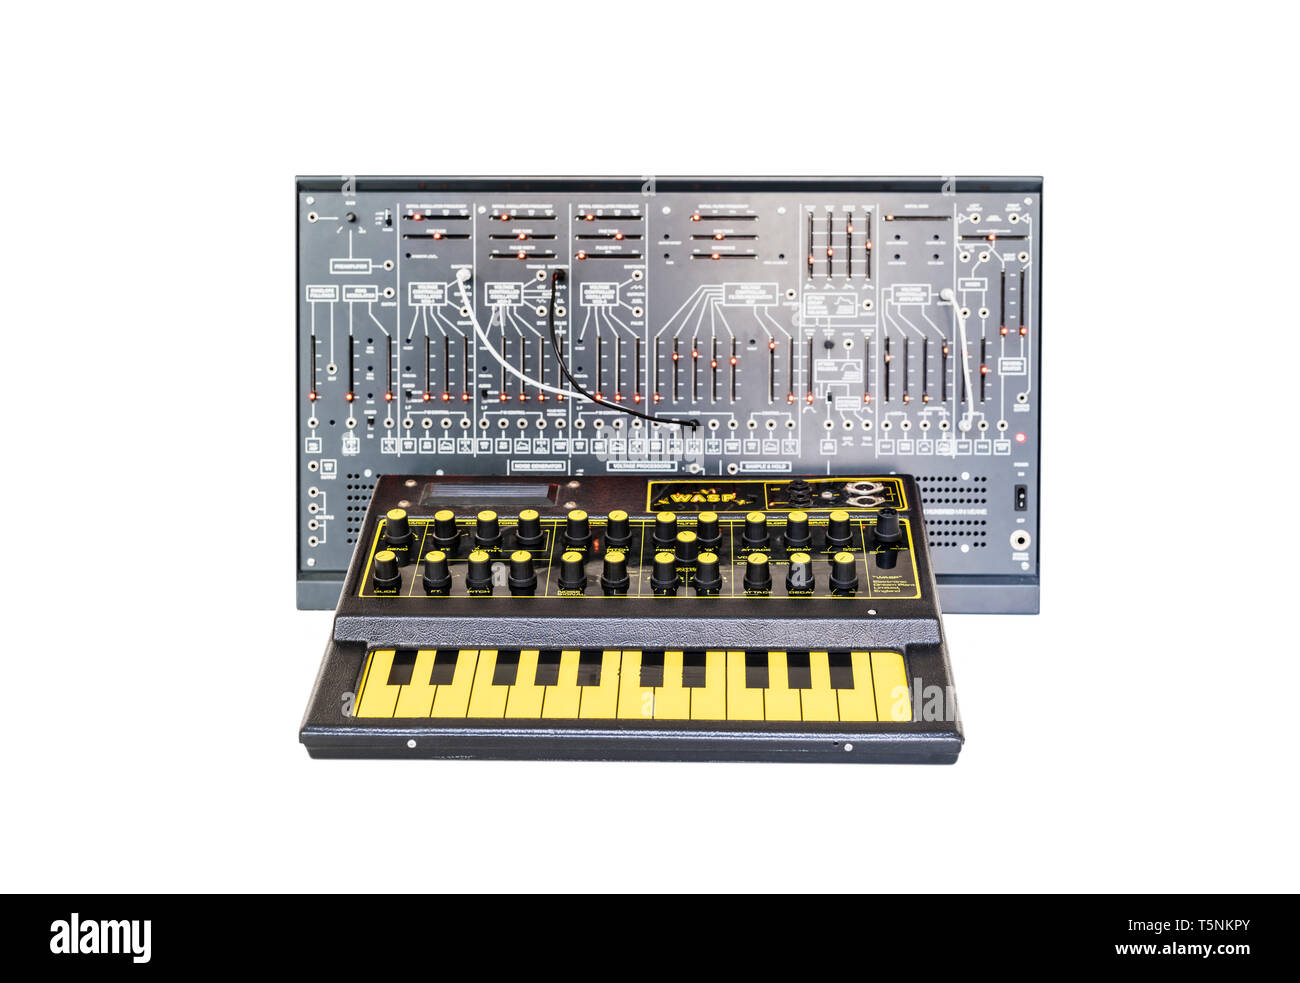 Zwei Synthesizern. EDP Wasp von 1978 und einem modernen Klon der Arp2600 von 1971 mit Patch Kabel, die in einem analogen Music Recording Studio. Stockfoto